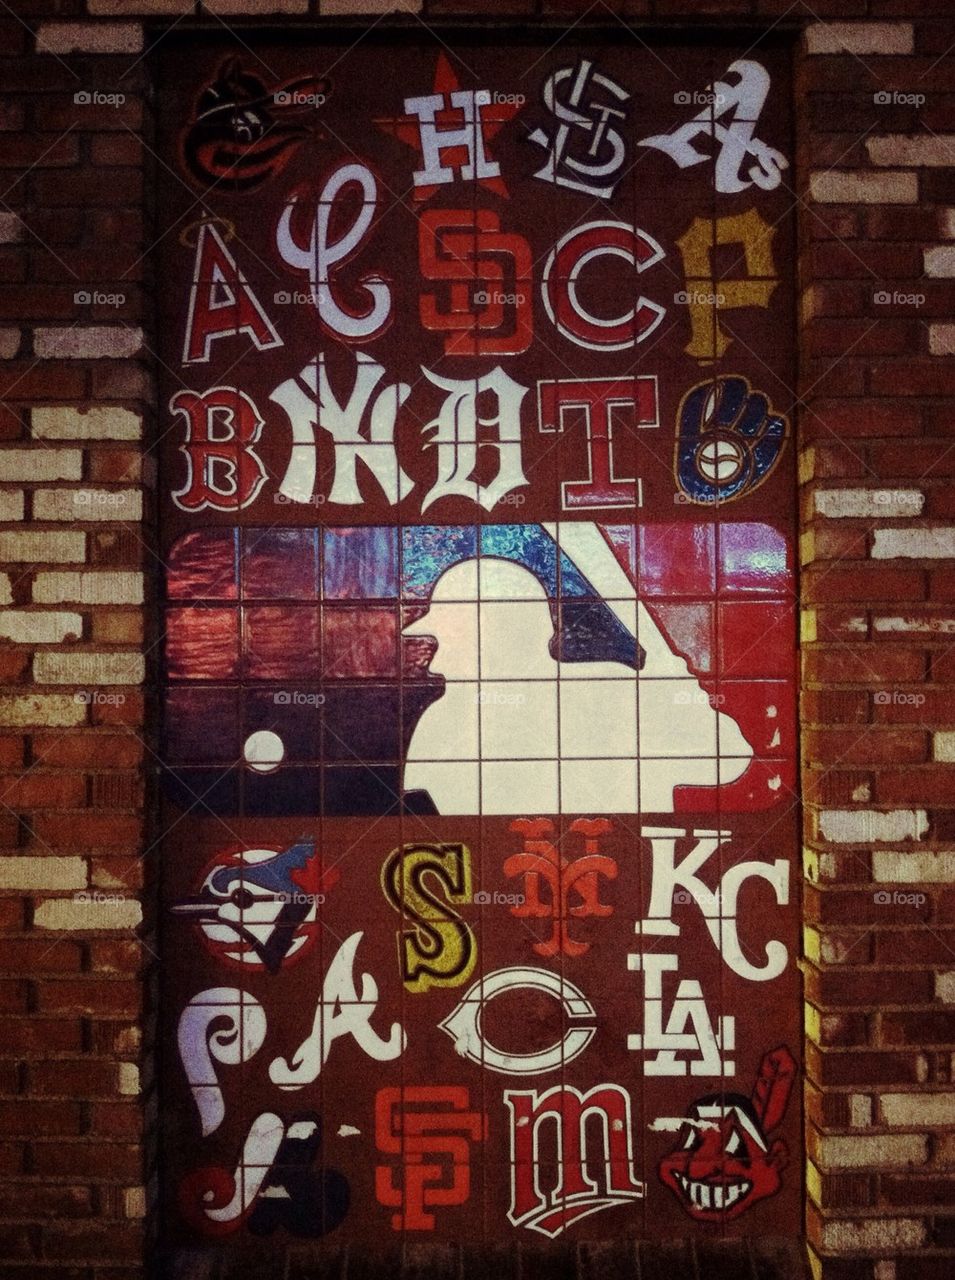 MLB wall tile